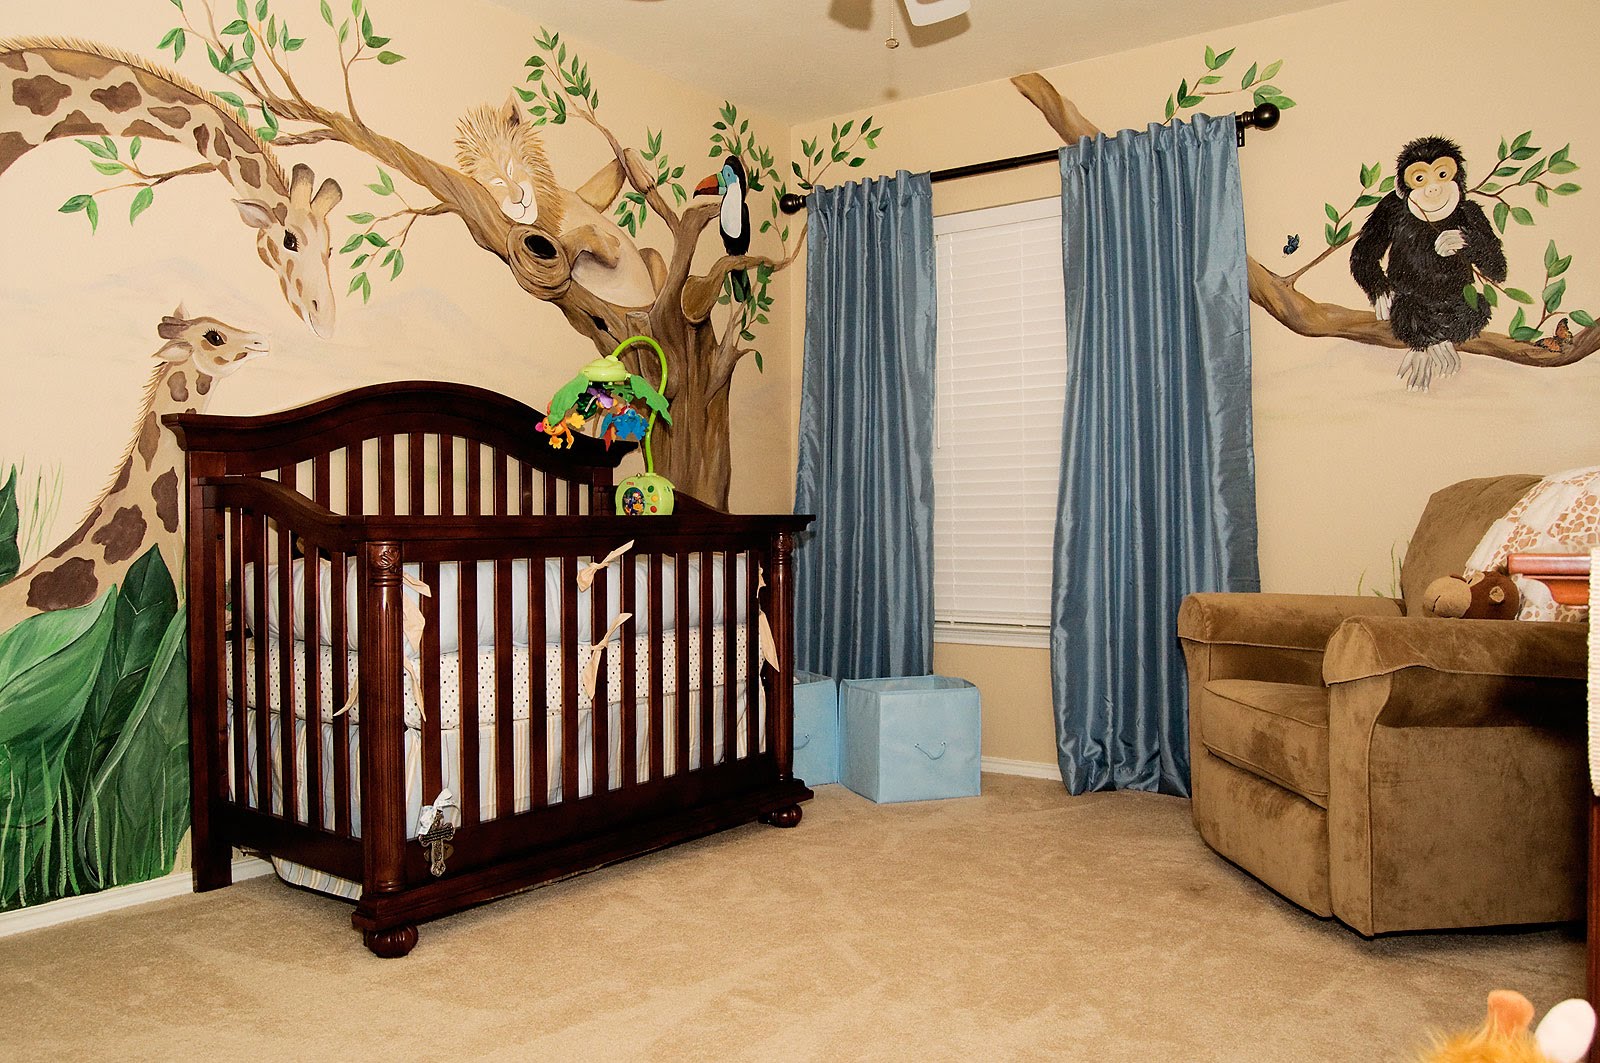 Pictures of Delightful Newborn Baby Room Decorating Ideas - YouTube newborn baby room decoration